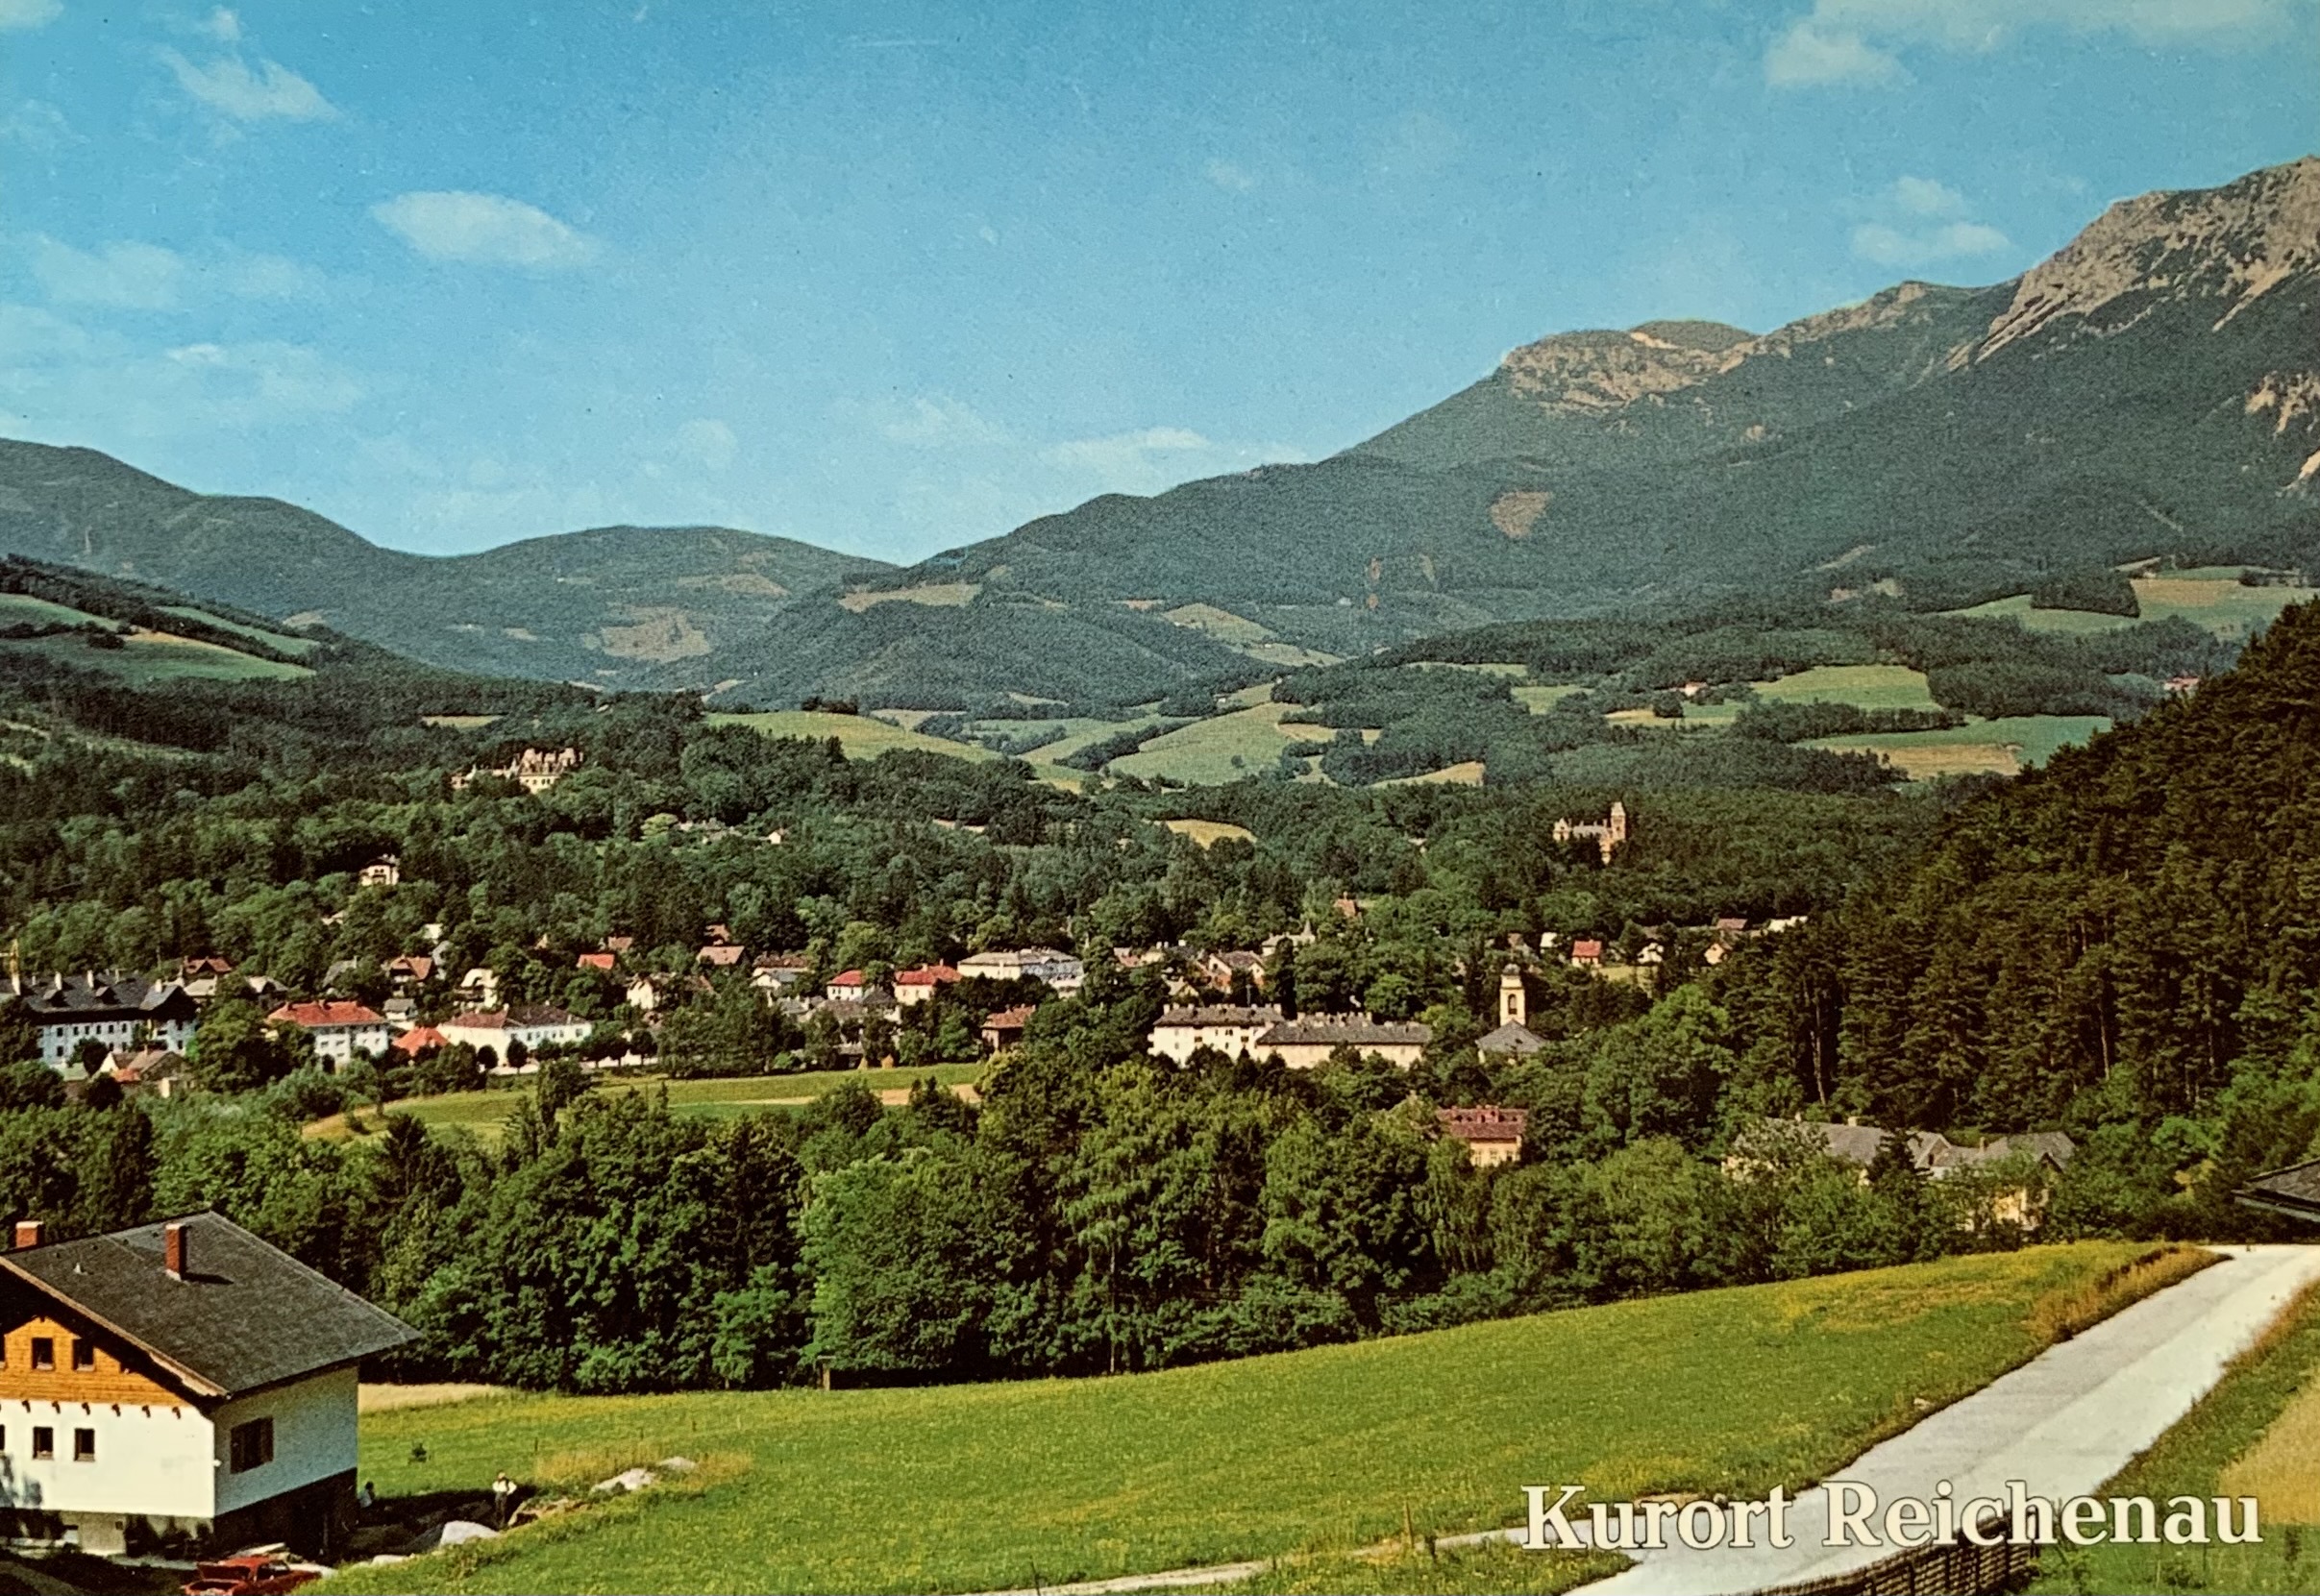 AK - Reichenau 01-2651-04